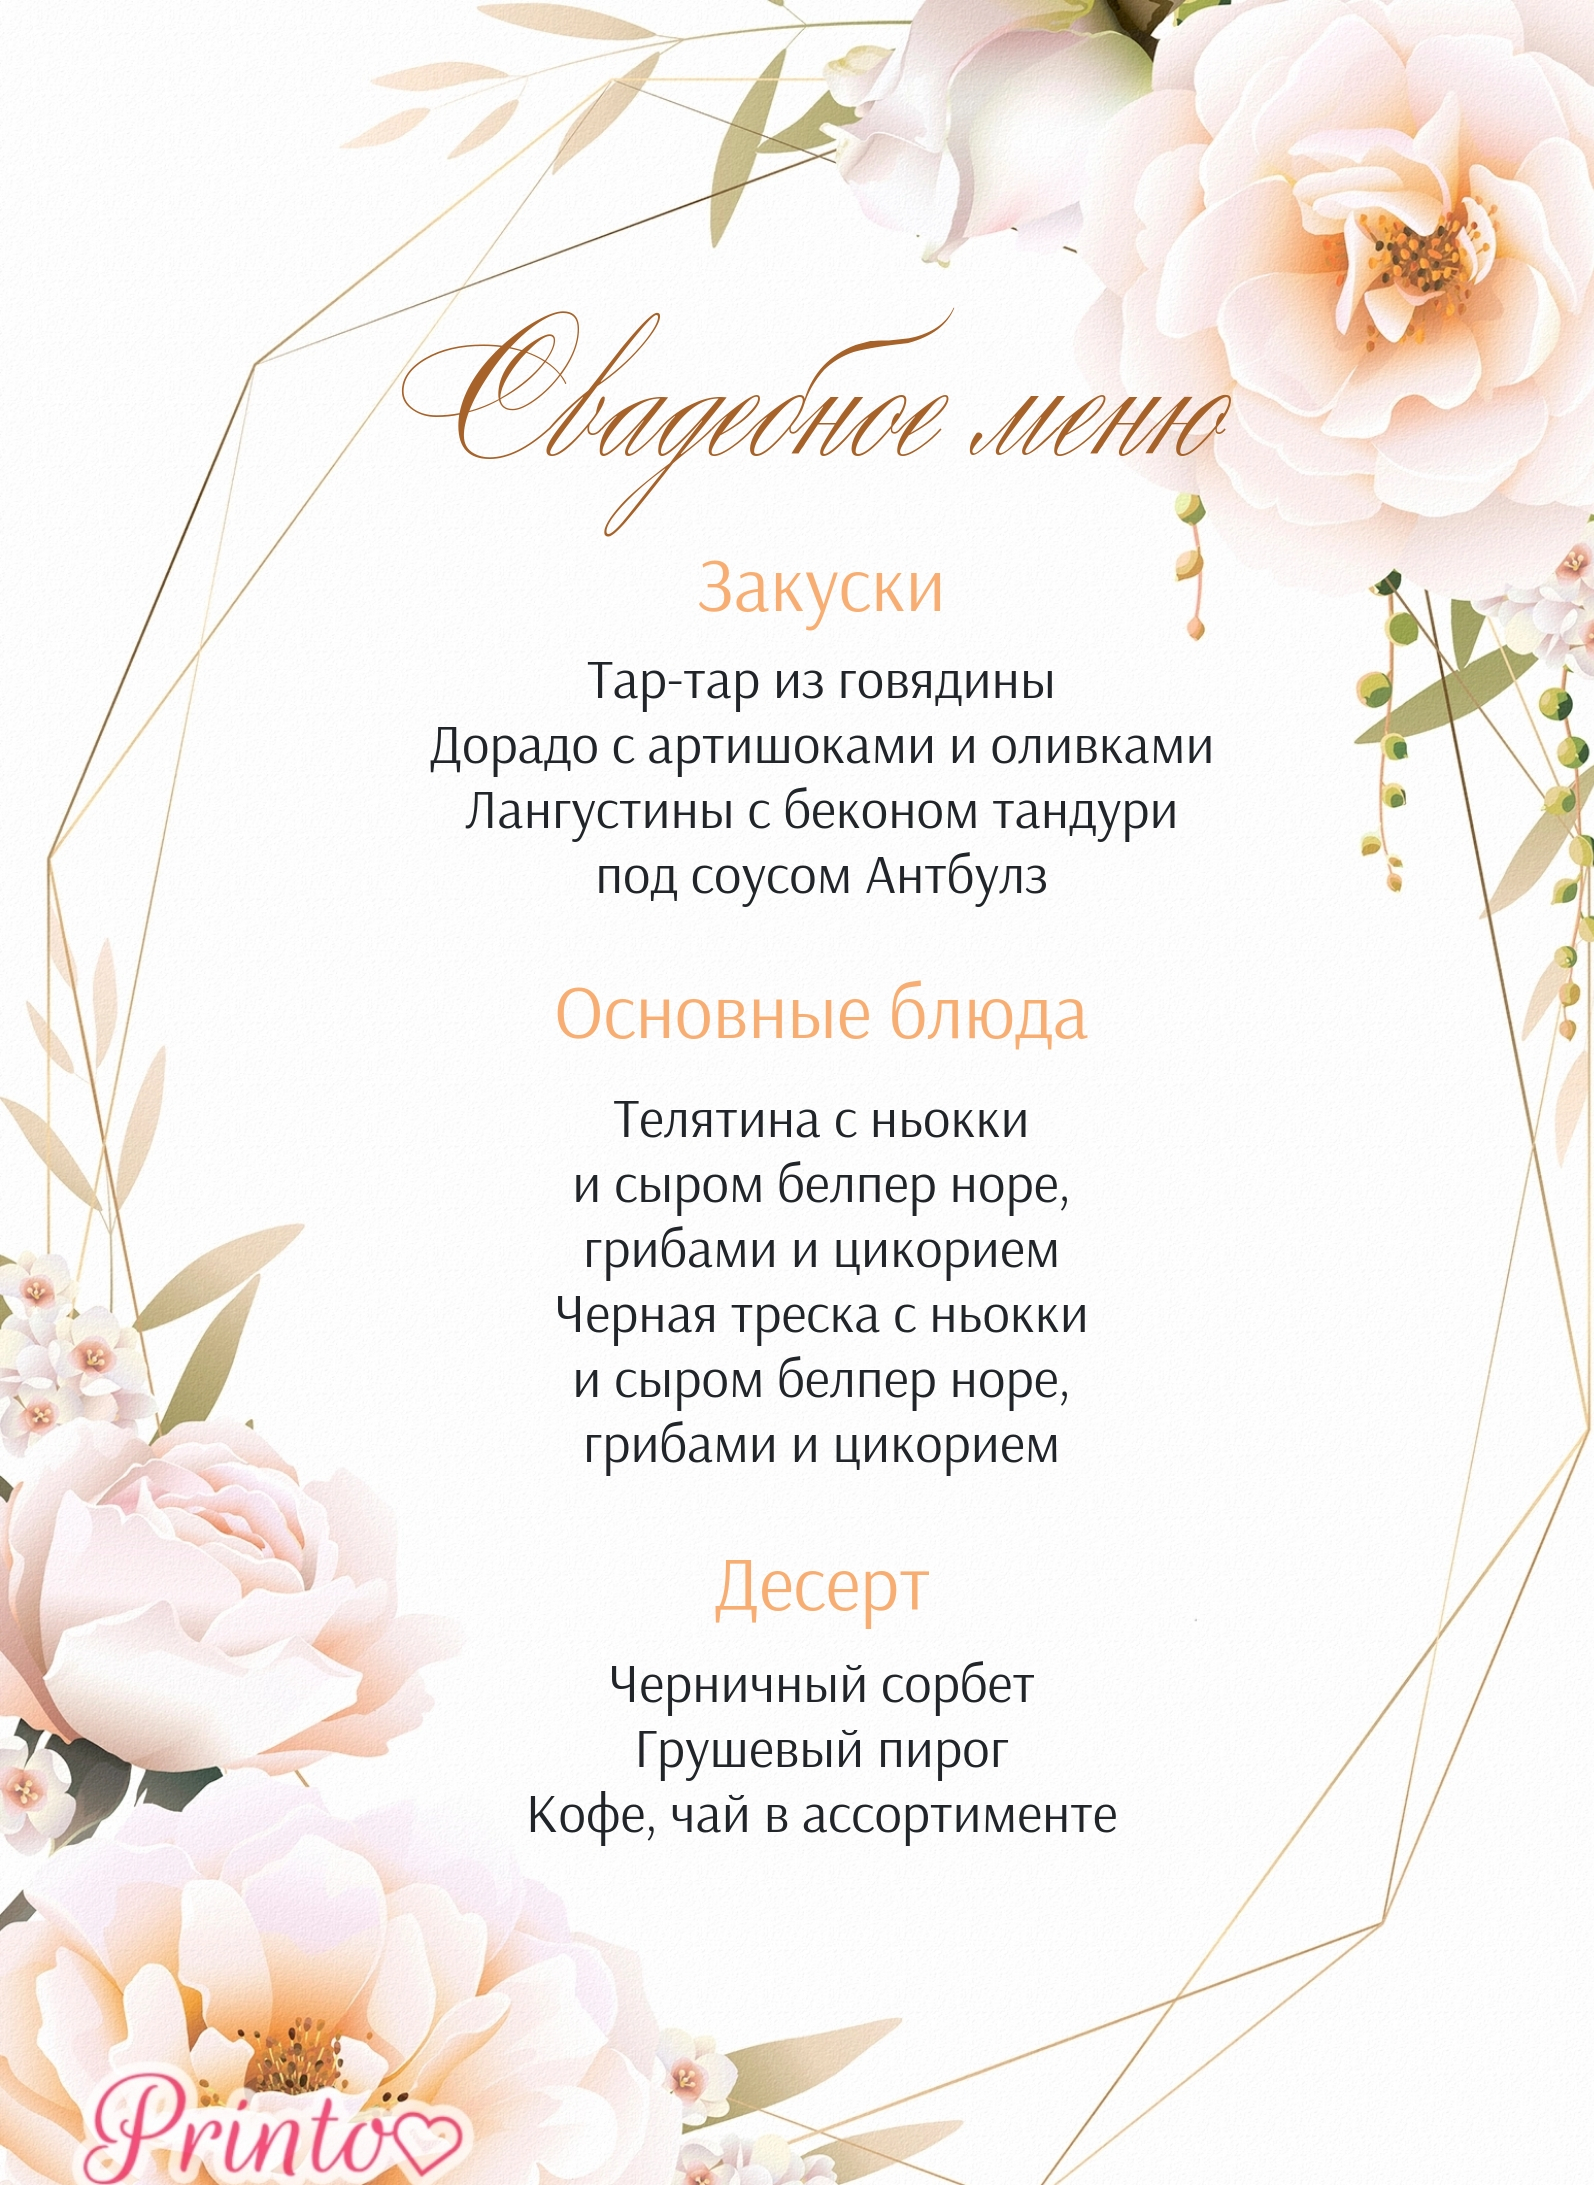 Шаблон свадебного меню "Летняя нежность"